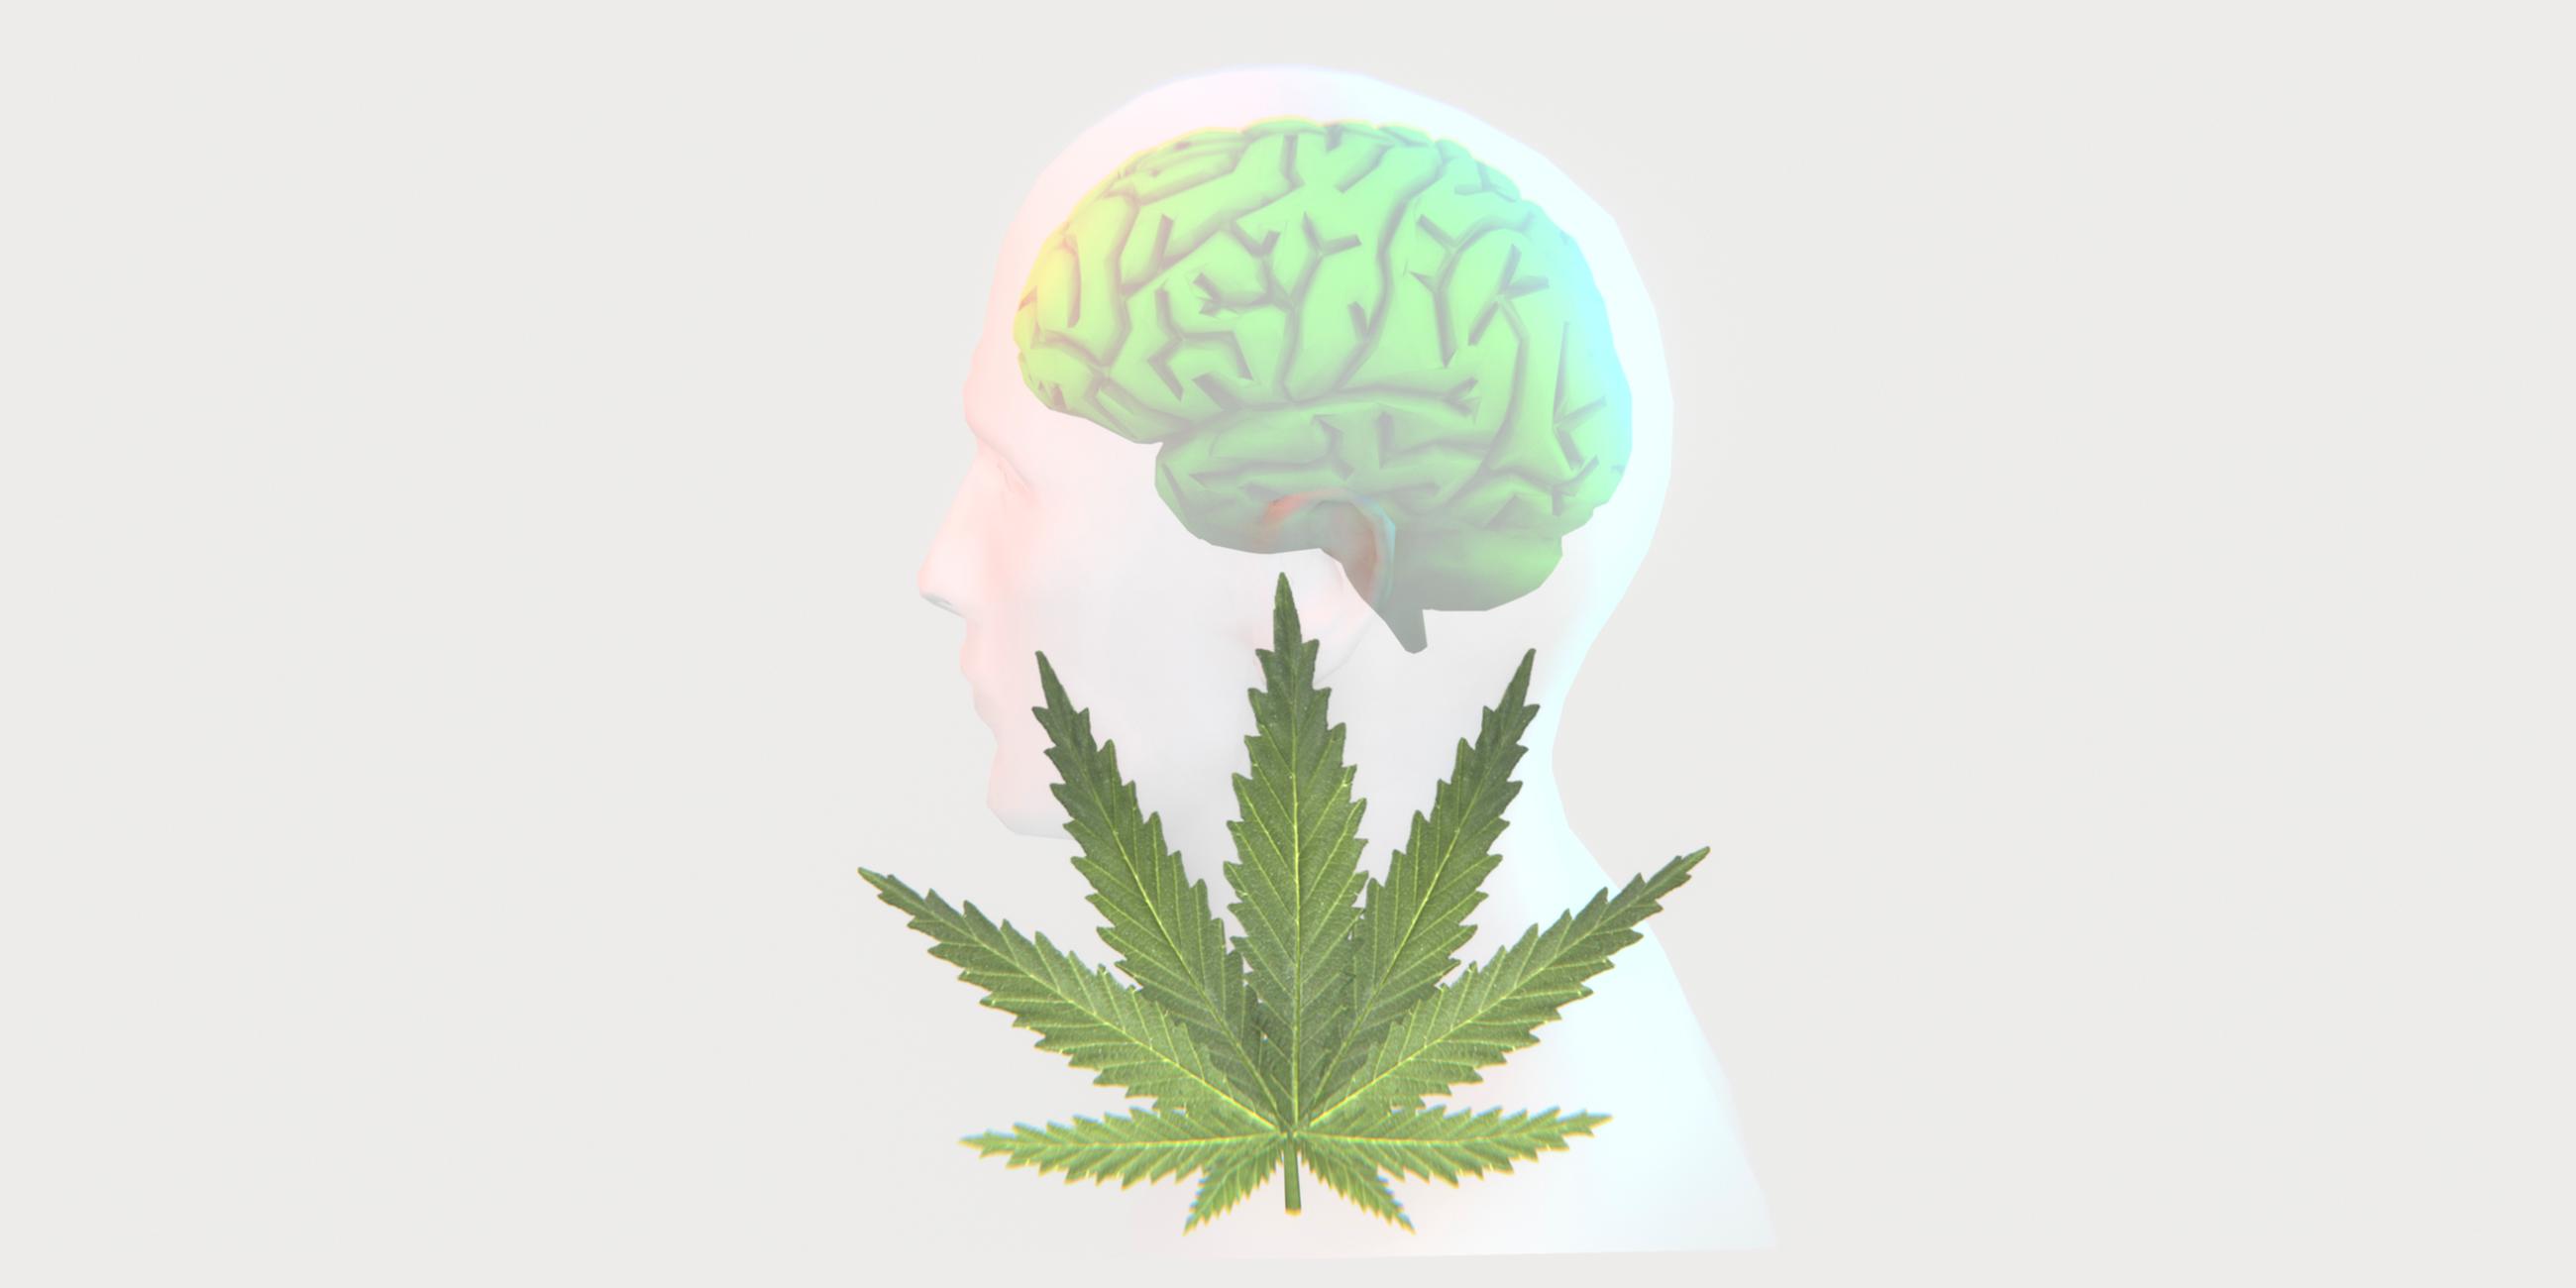 Die Illustration zeigt ein Cannabis-Blatt und die Silhouette eines Menschen